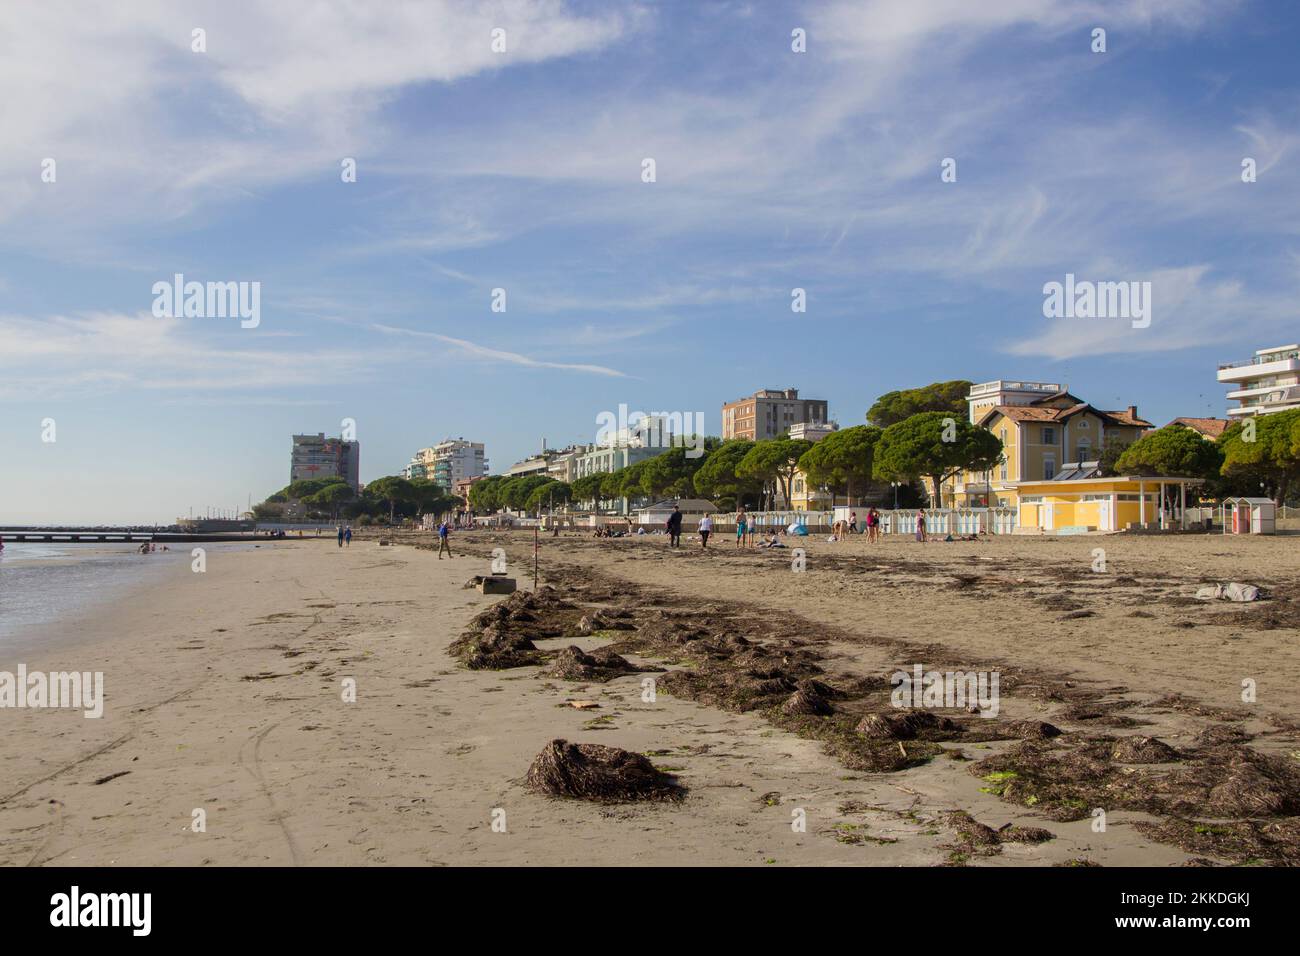 Sandy beach shore in Grado, Italy Stock Photo